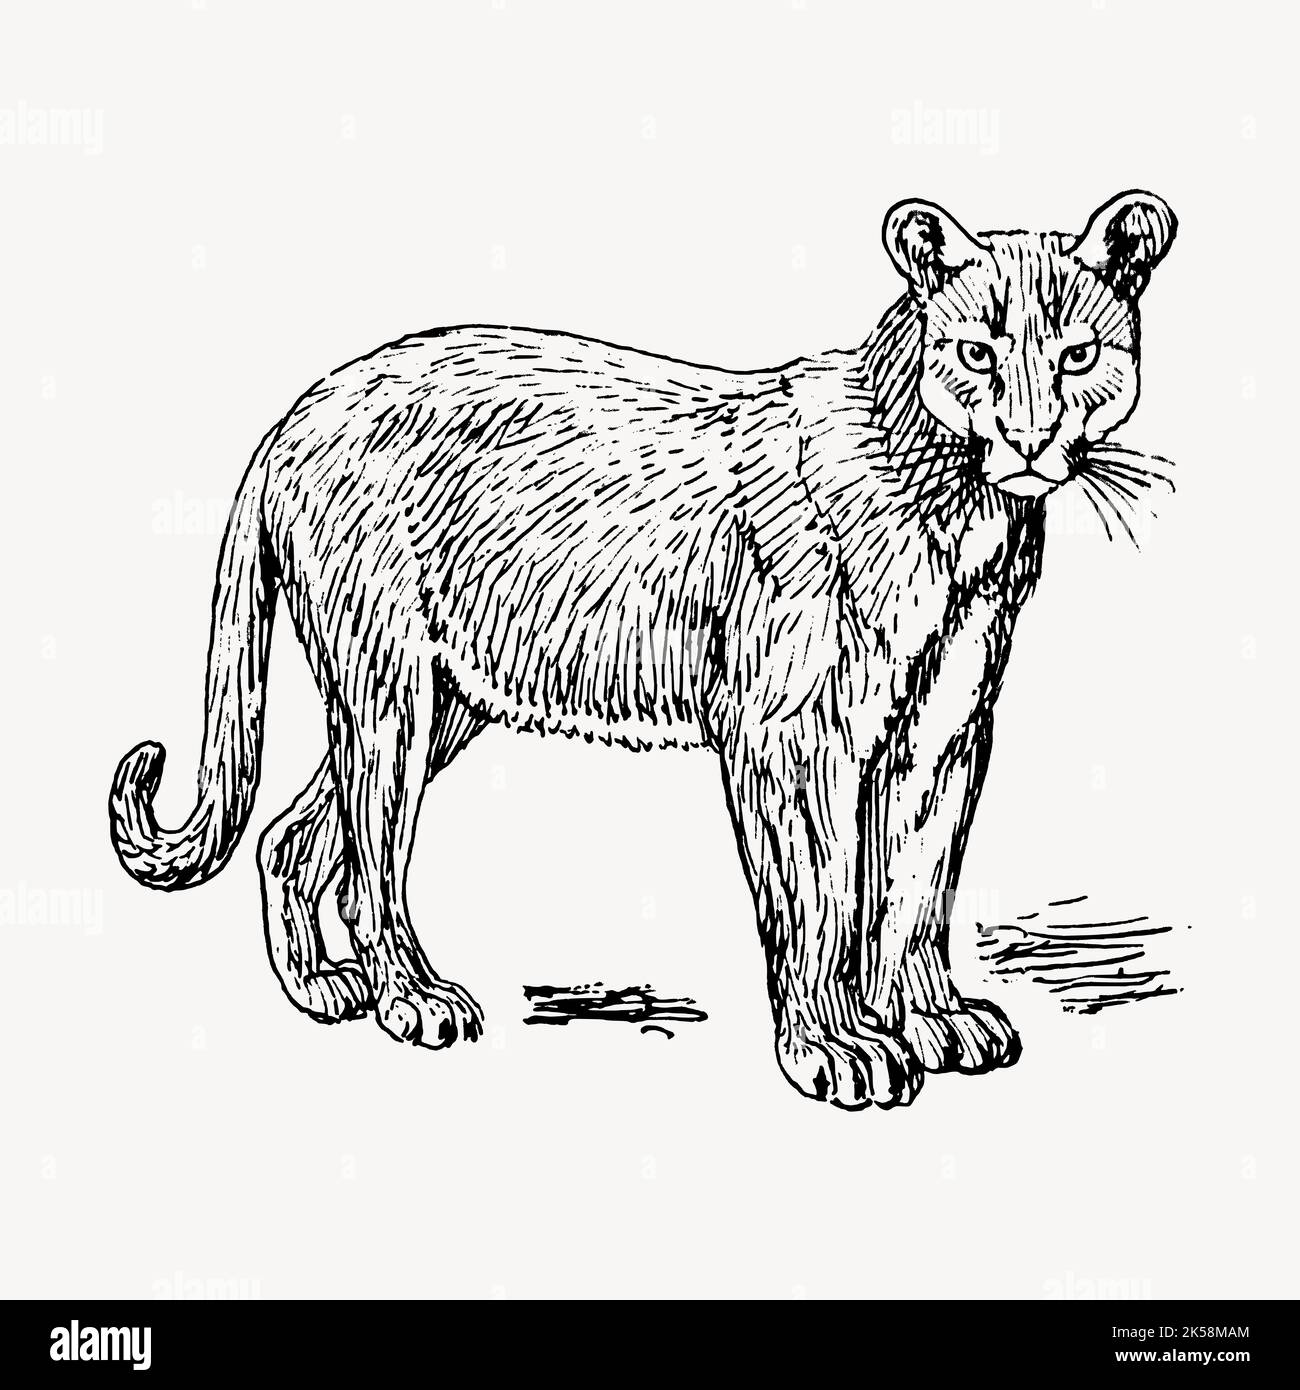 Disegno Puma, vettore di illustrazione di animali selvatici vintage  Immagine e Vettoriale - Alamy